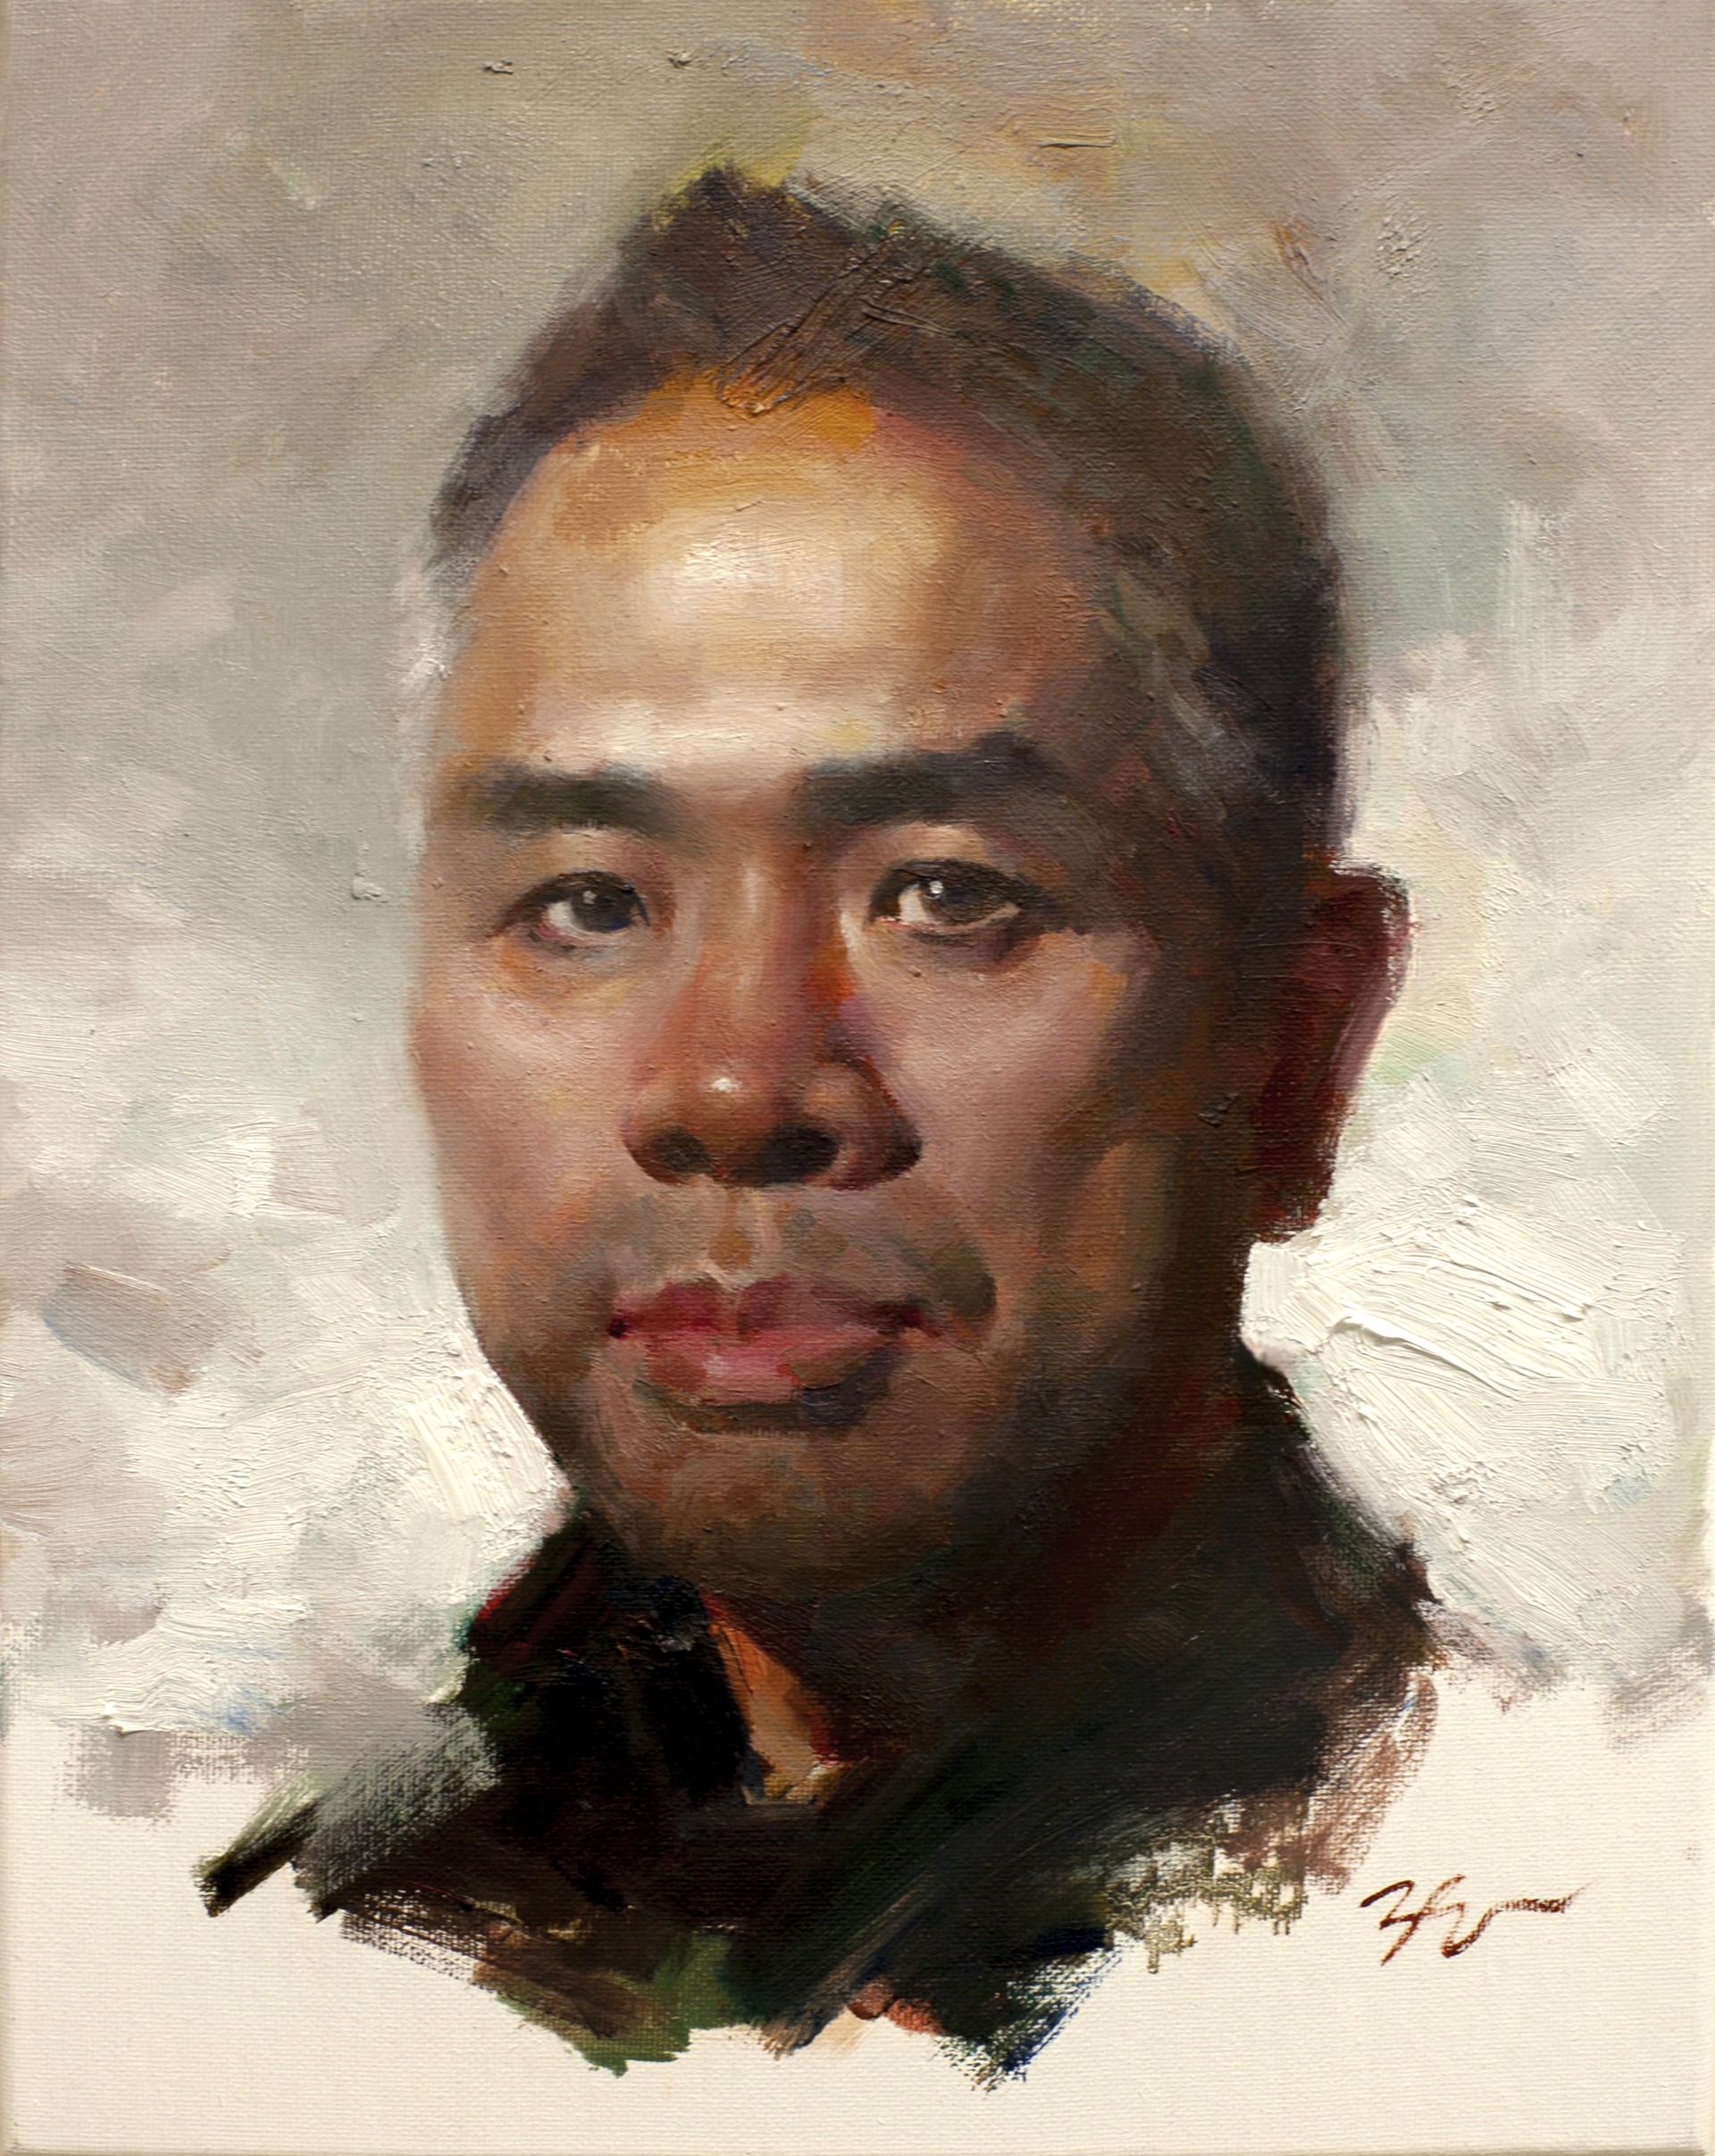 Self-Portrait by Zimou Tan